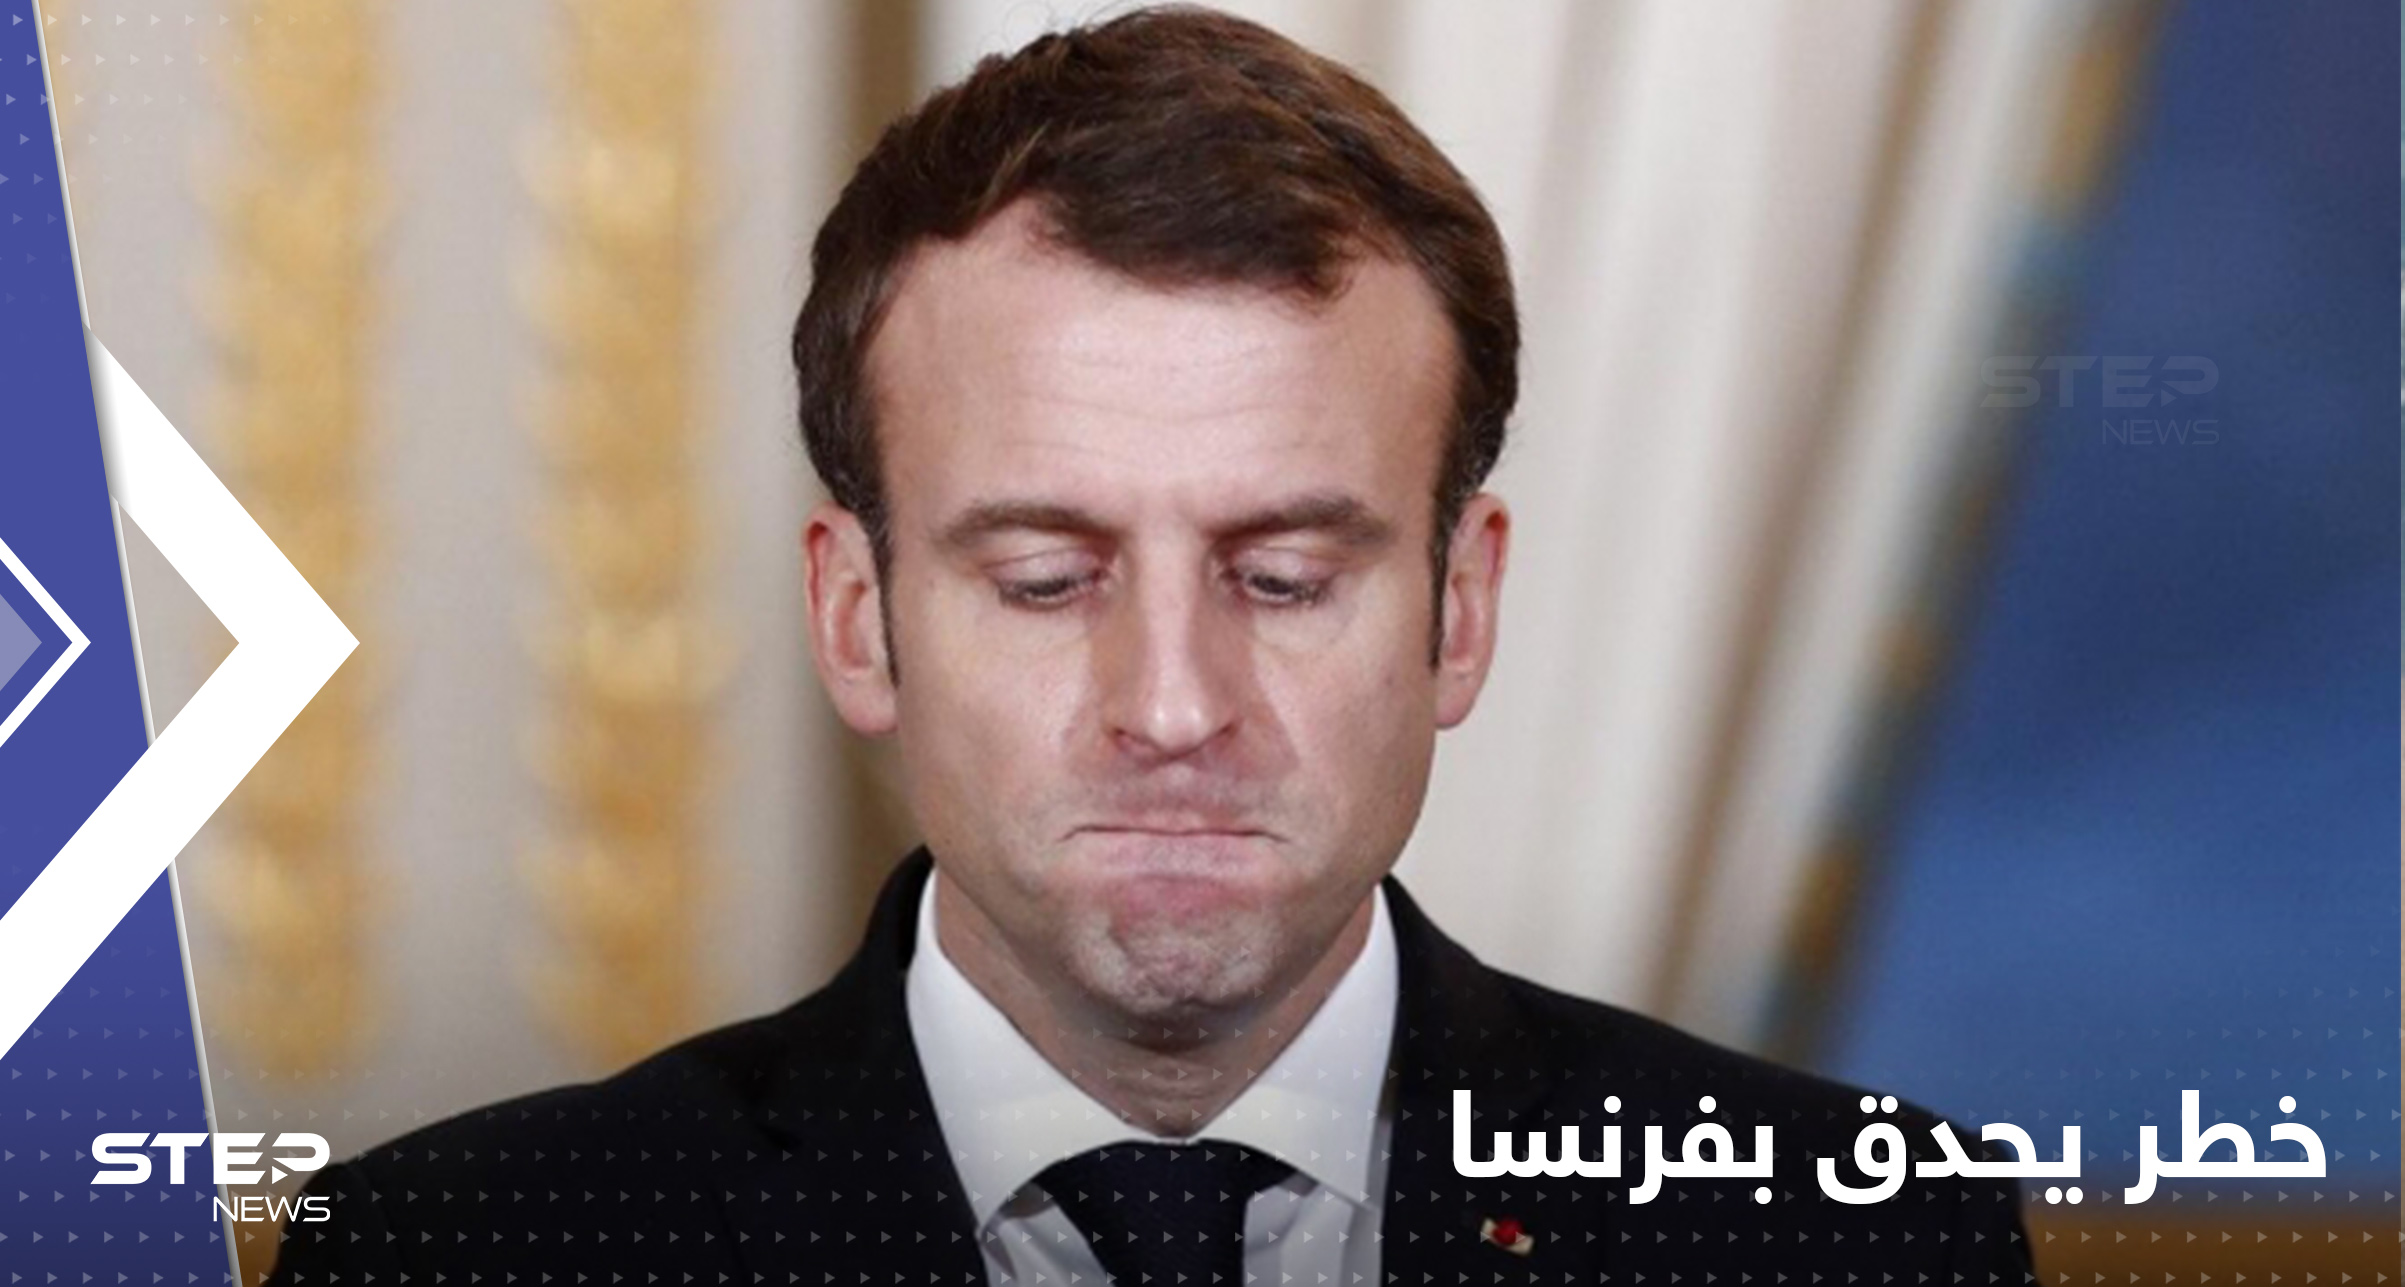 ضربة لماكرون في الانتخابات الفرنسية الثانية 